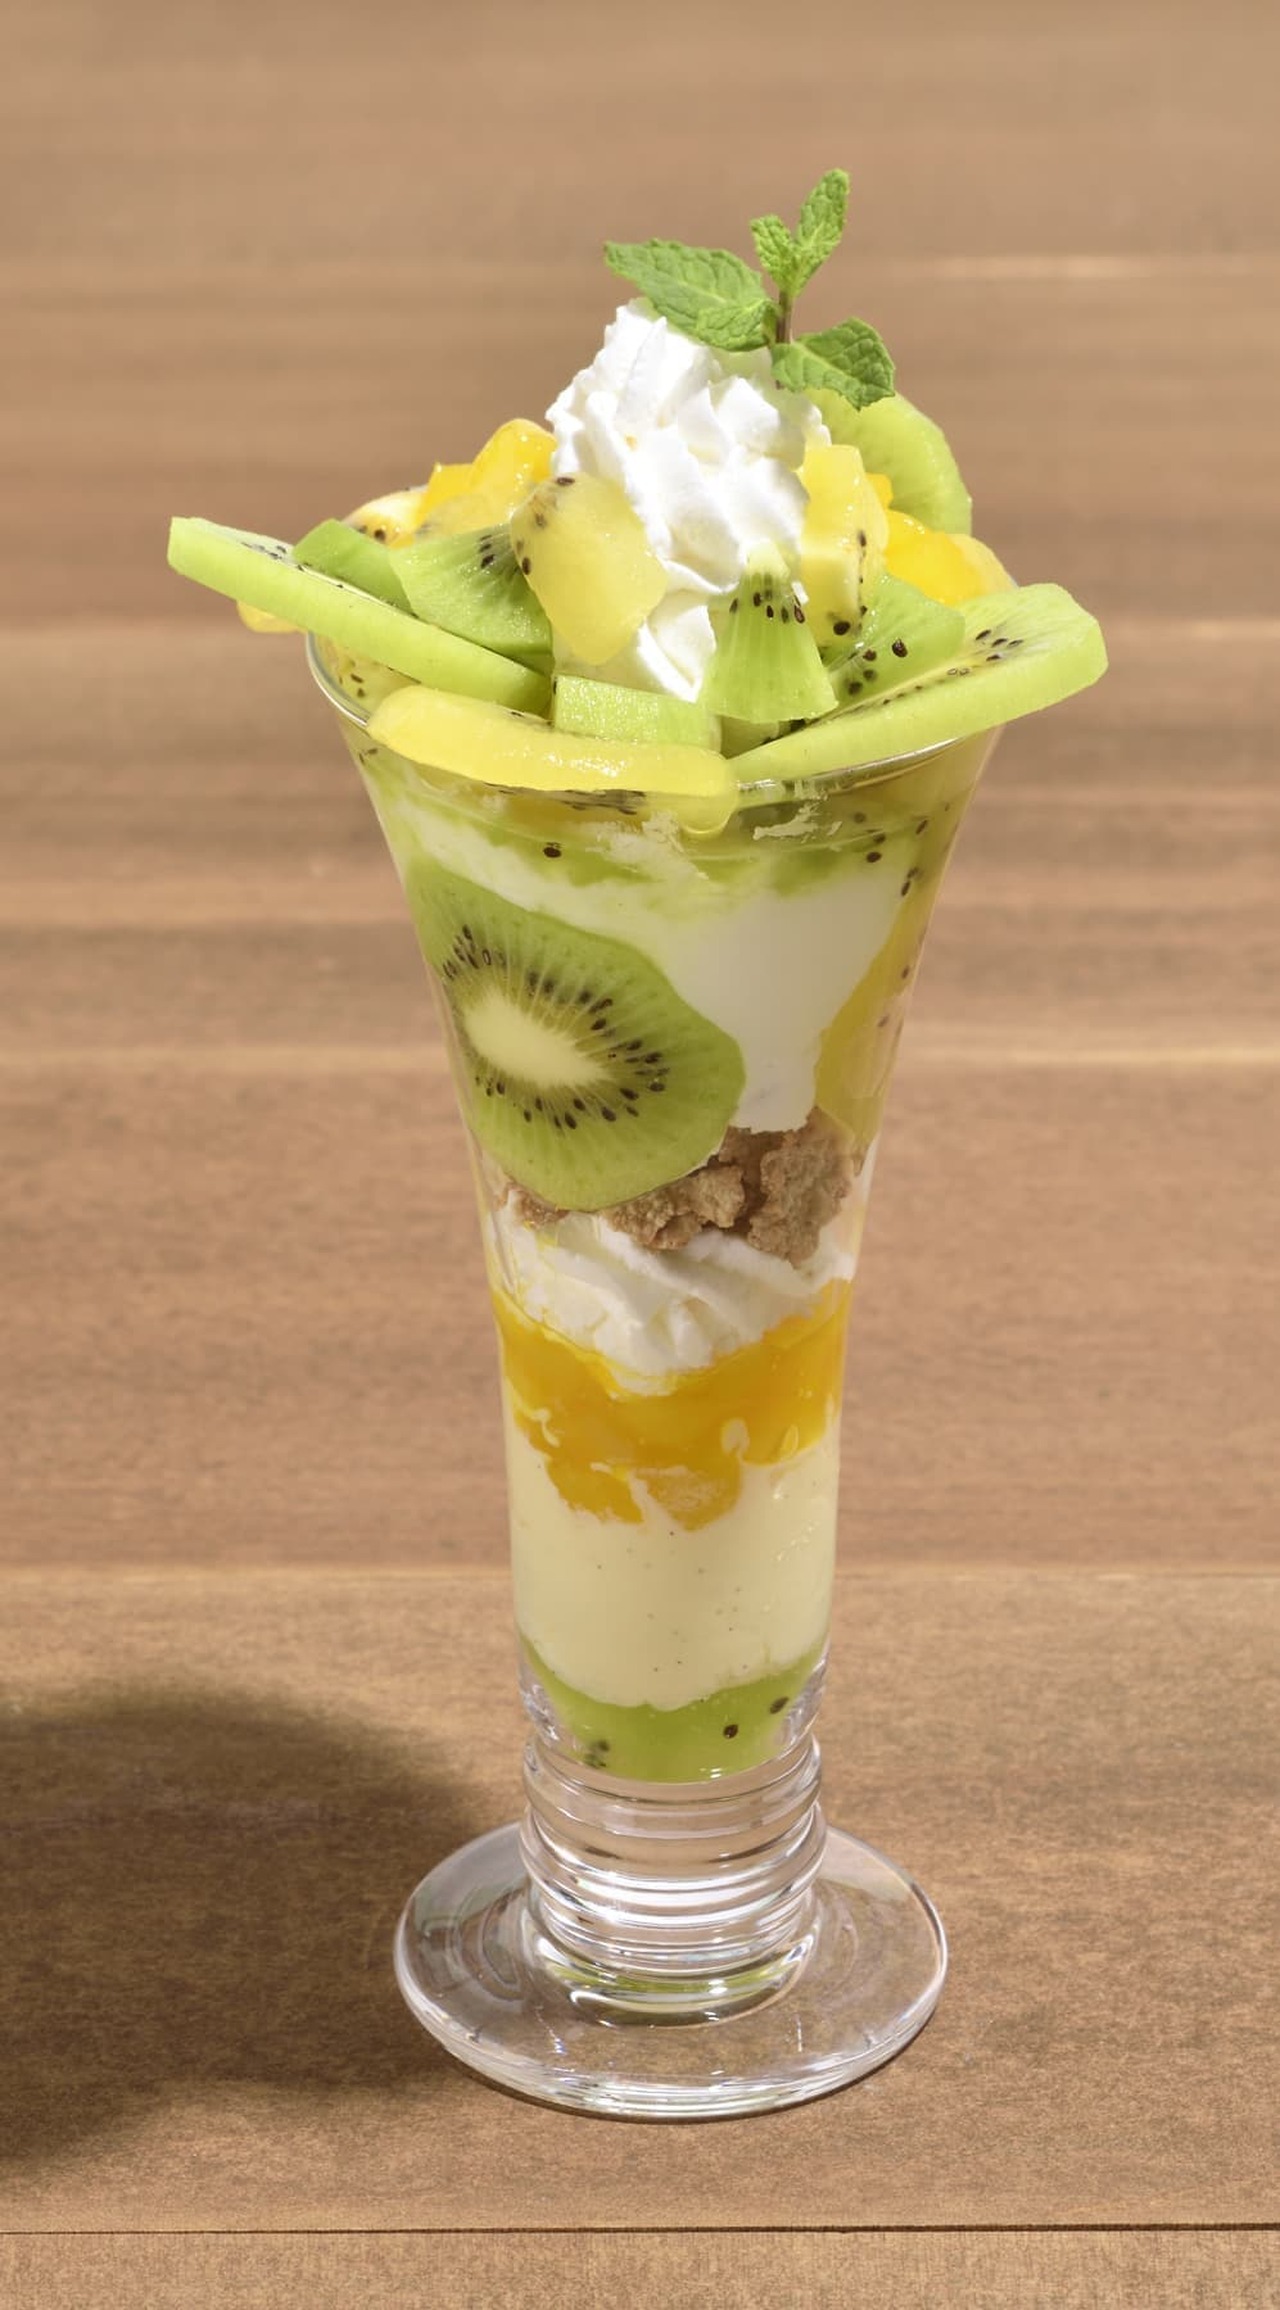 Ginza Cozy Corner "W Kiwi & Yogurt Parfait"